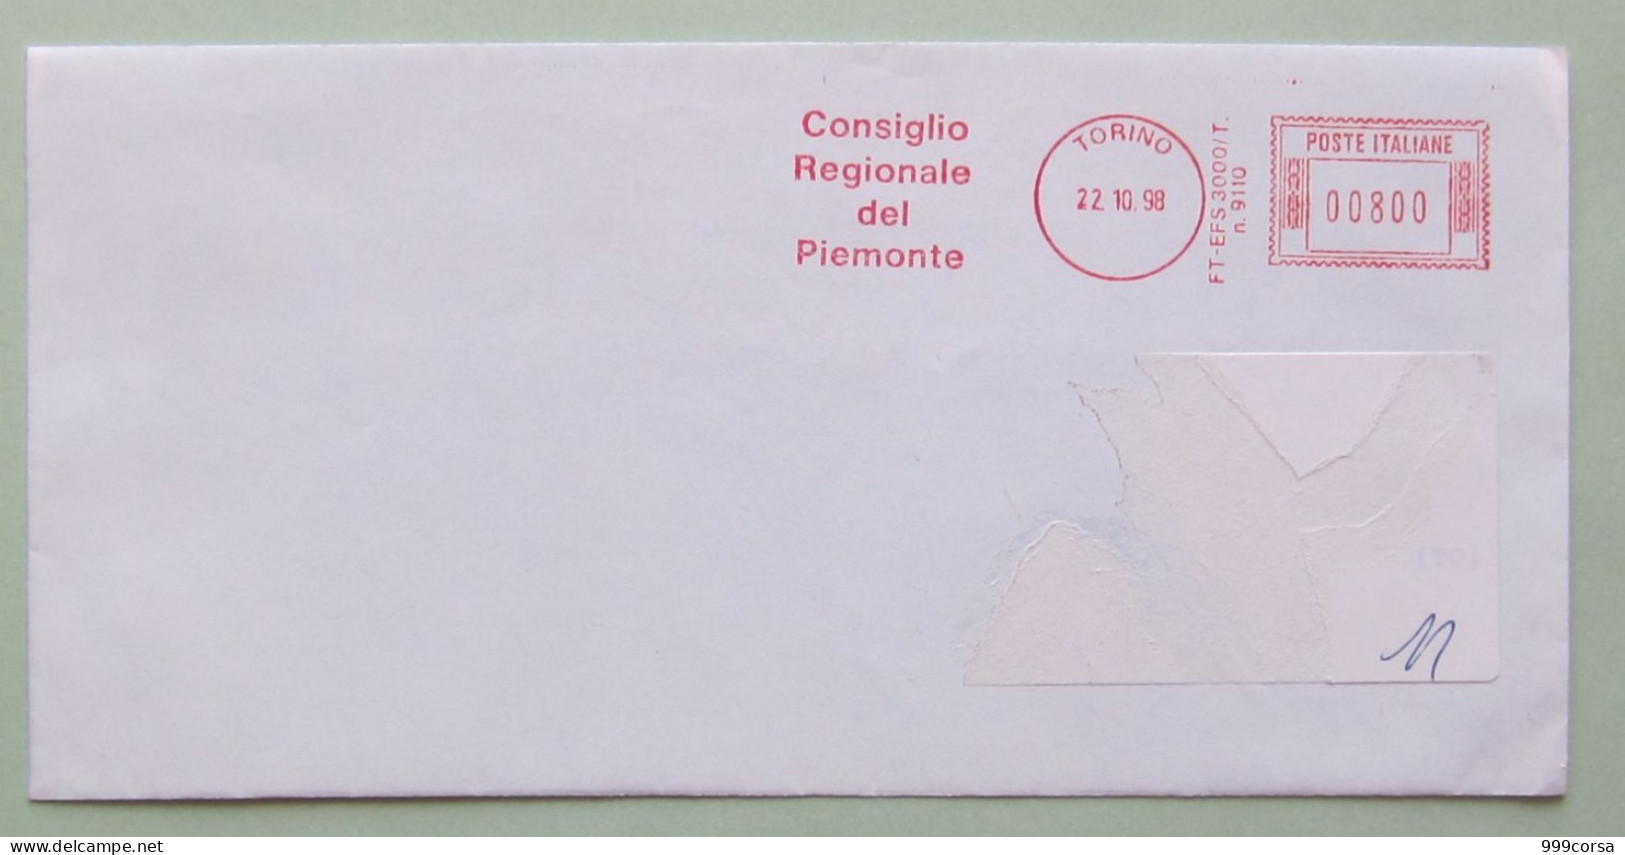 Consiglio Regionale Piemonte, 22-10-98, 800 Lire, Politica, Amministrazione, Partiti, Ema, Meter, Freistempel - Máquinas Franqueo (EMA)